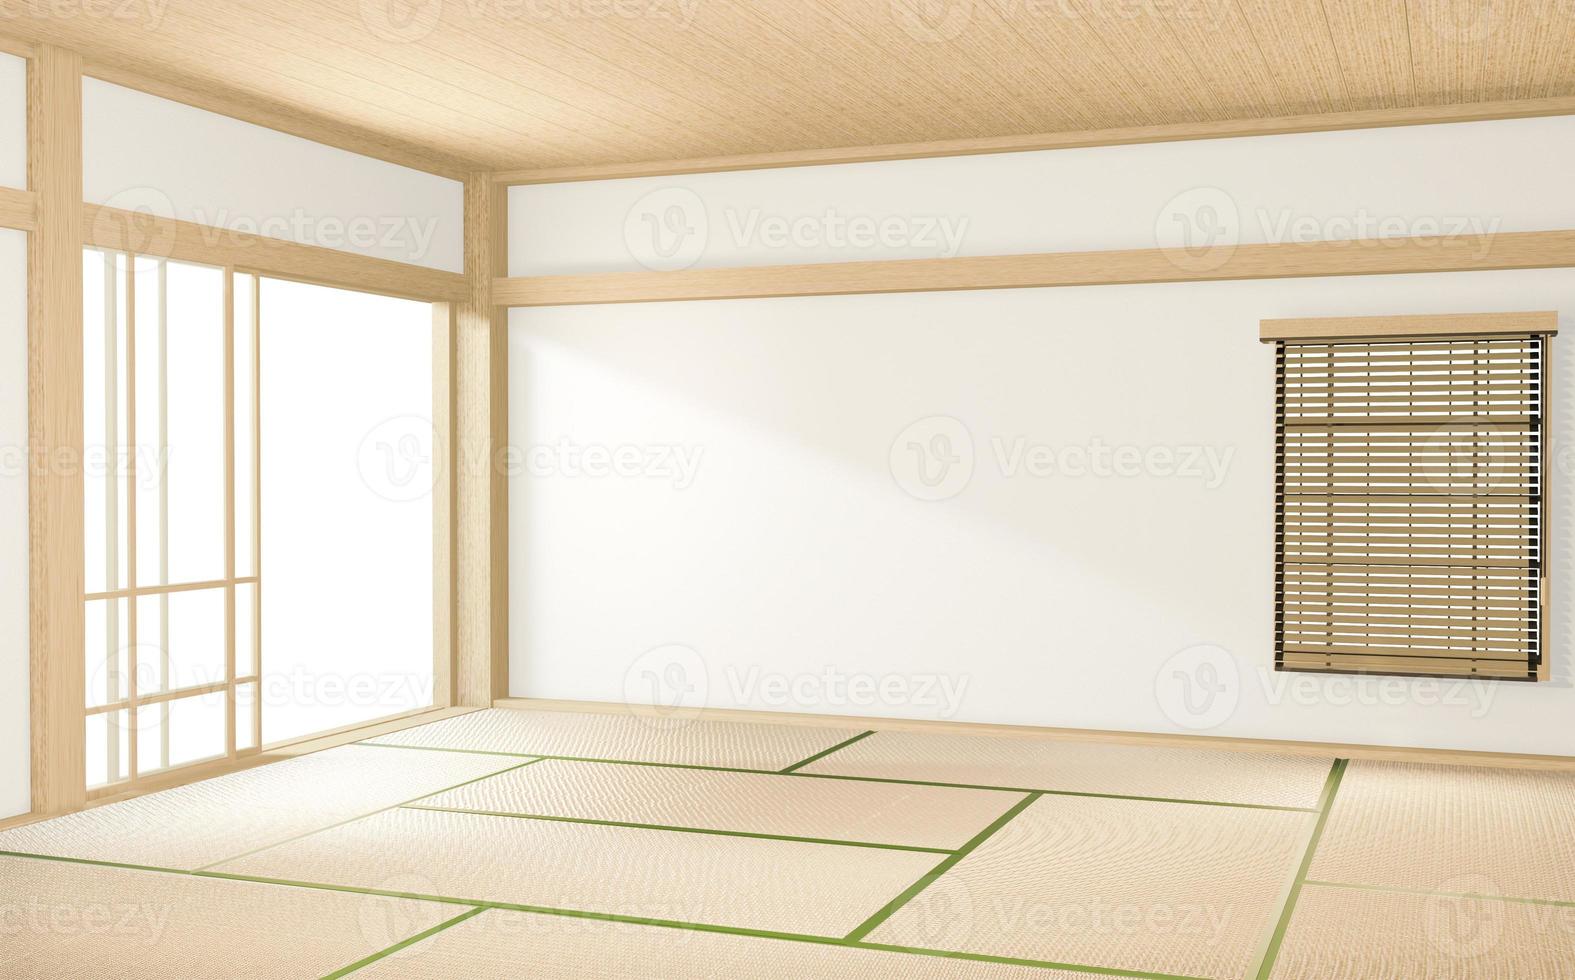 interior de la habitación de estilo tropical, habitación vacía de estilo japonés. Representación 3d foto